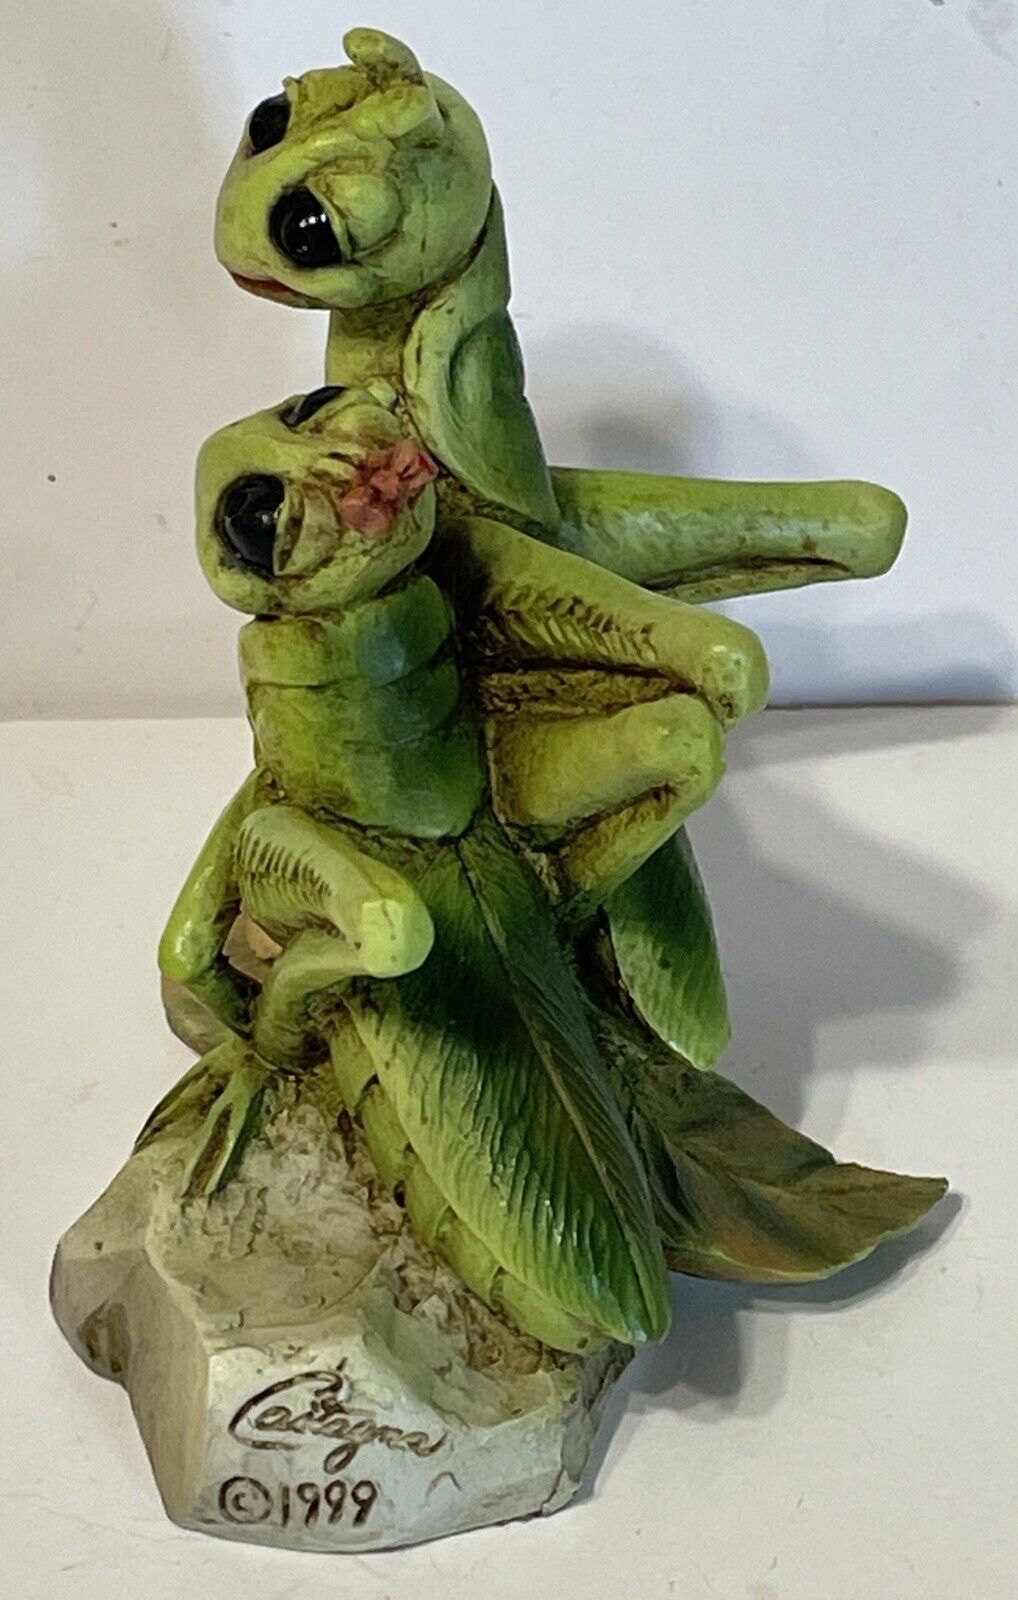 New Grasshopper Lovers Sculptures By Castagna Flower Leaf Figurine COA Без бренда - фотография #4